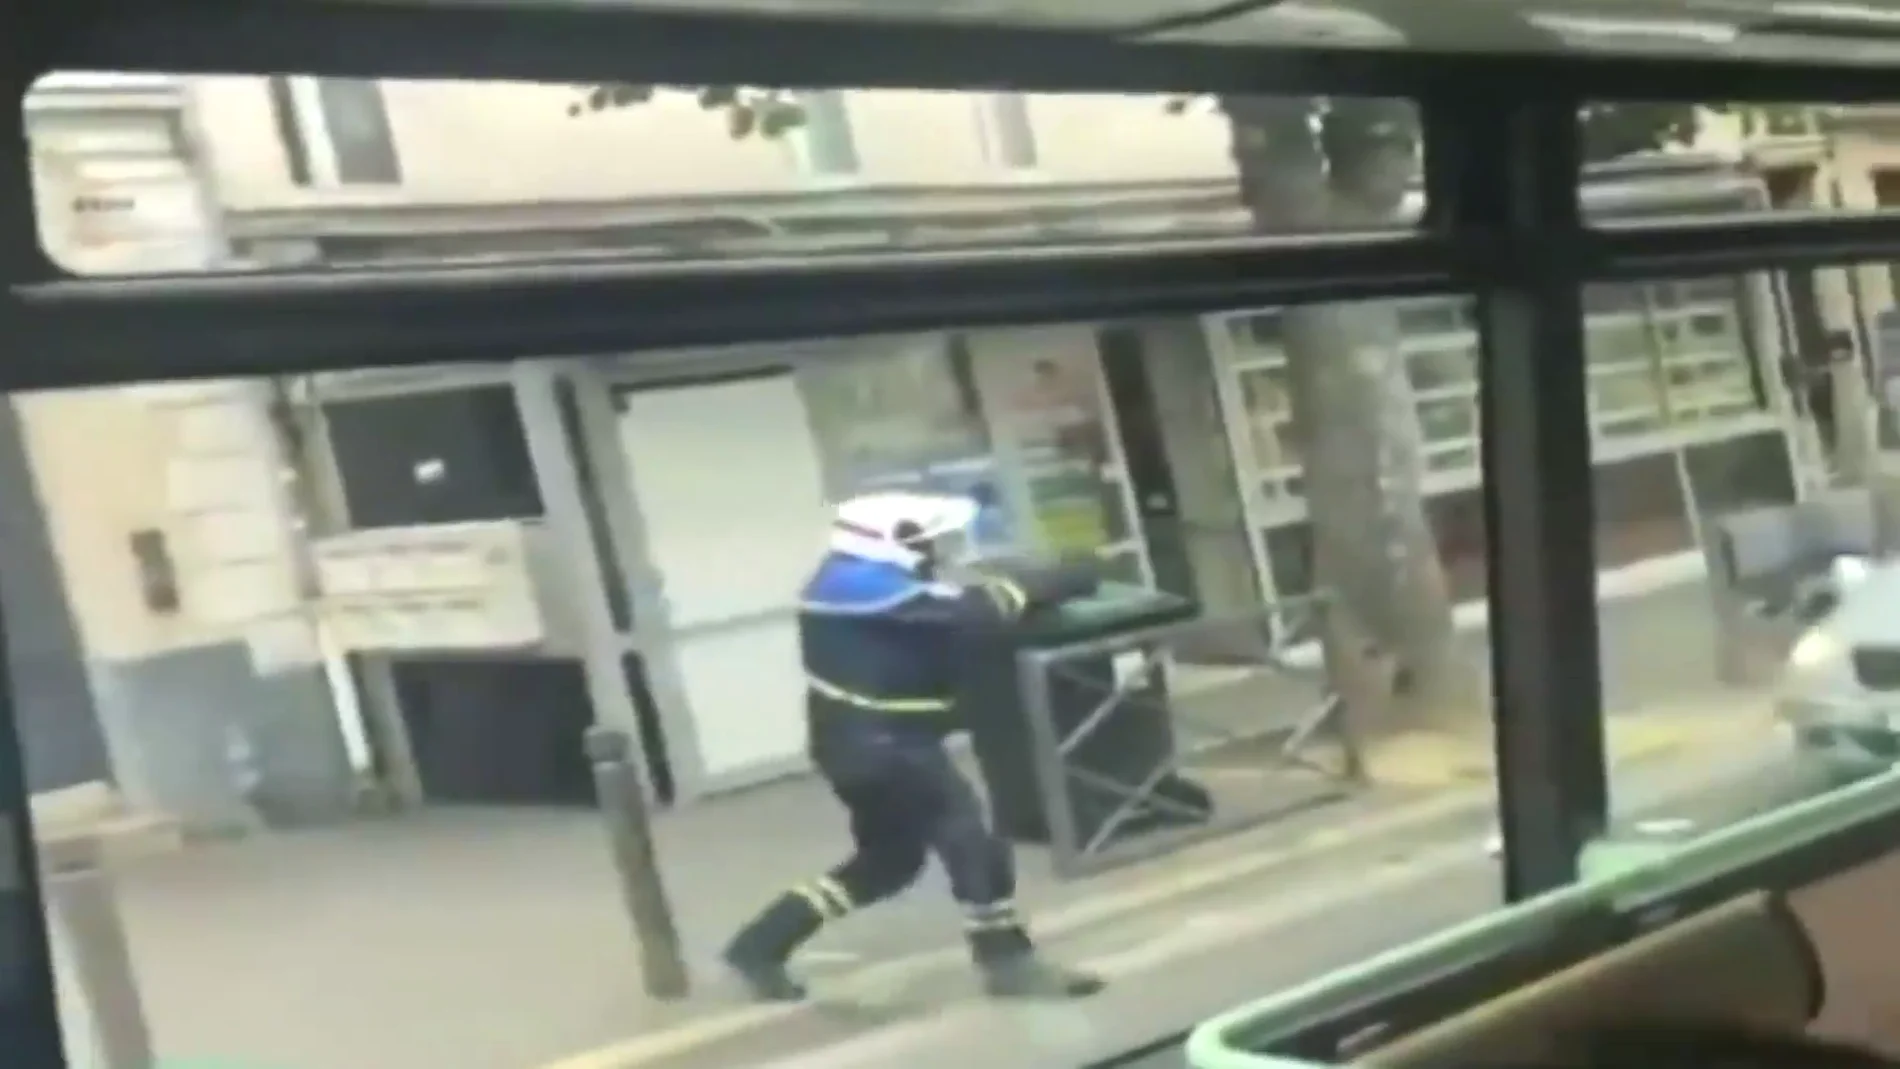 La policía francesa abre fuego en medio de la calle para tratar de detener un vehículo a la fuga